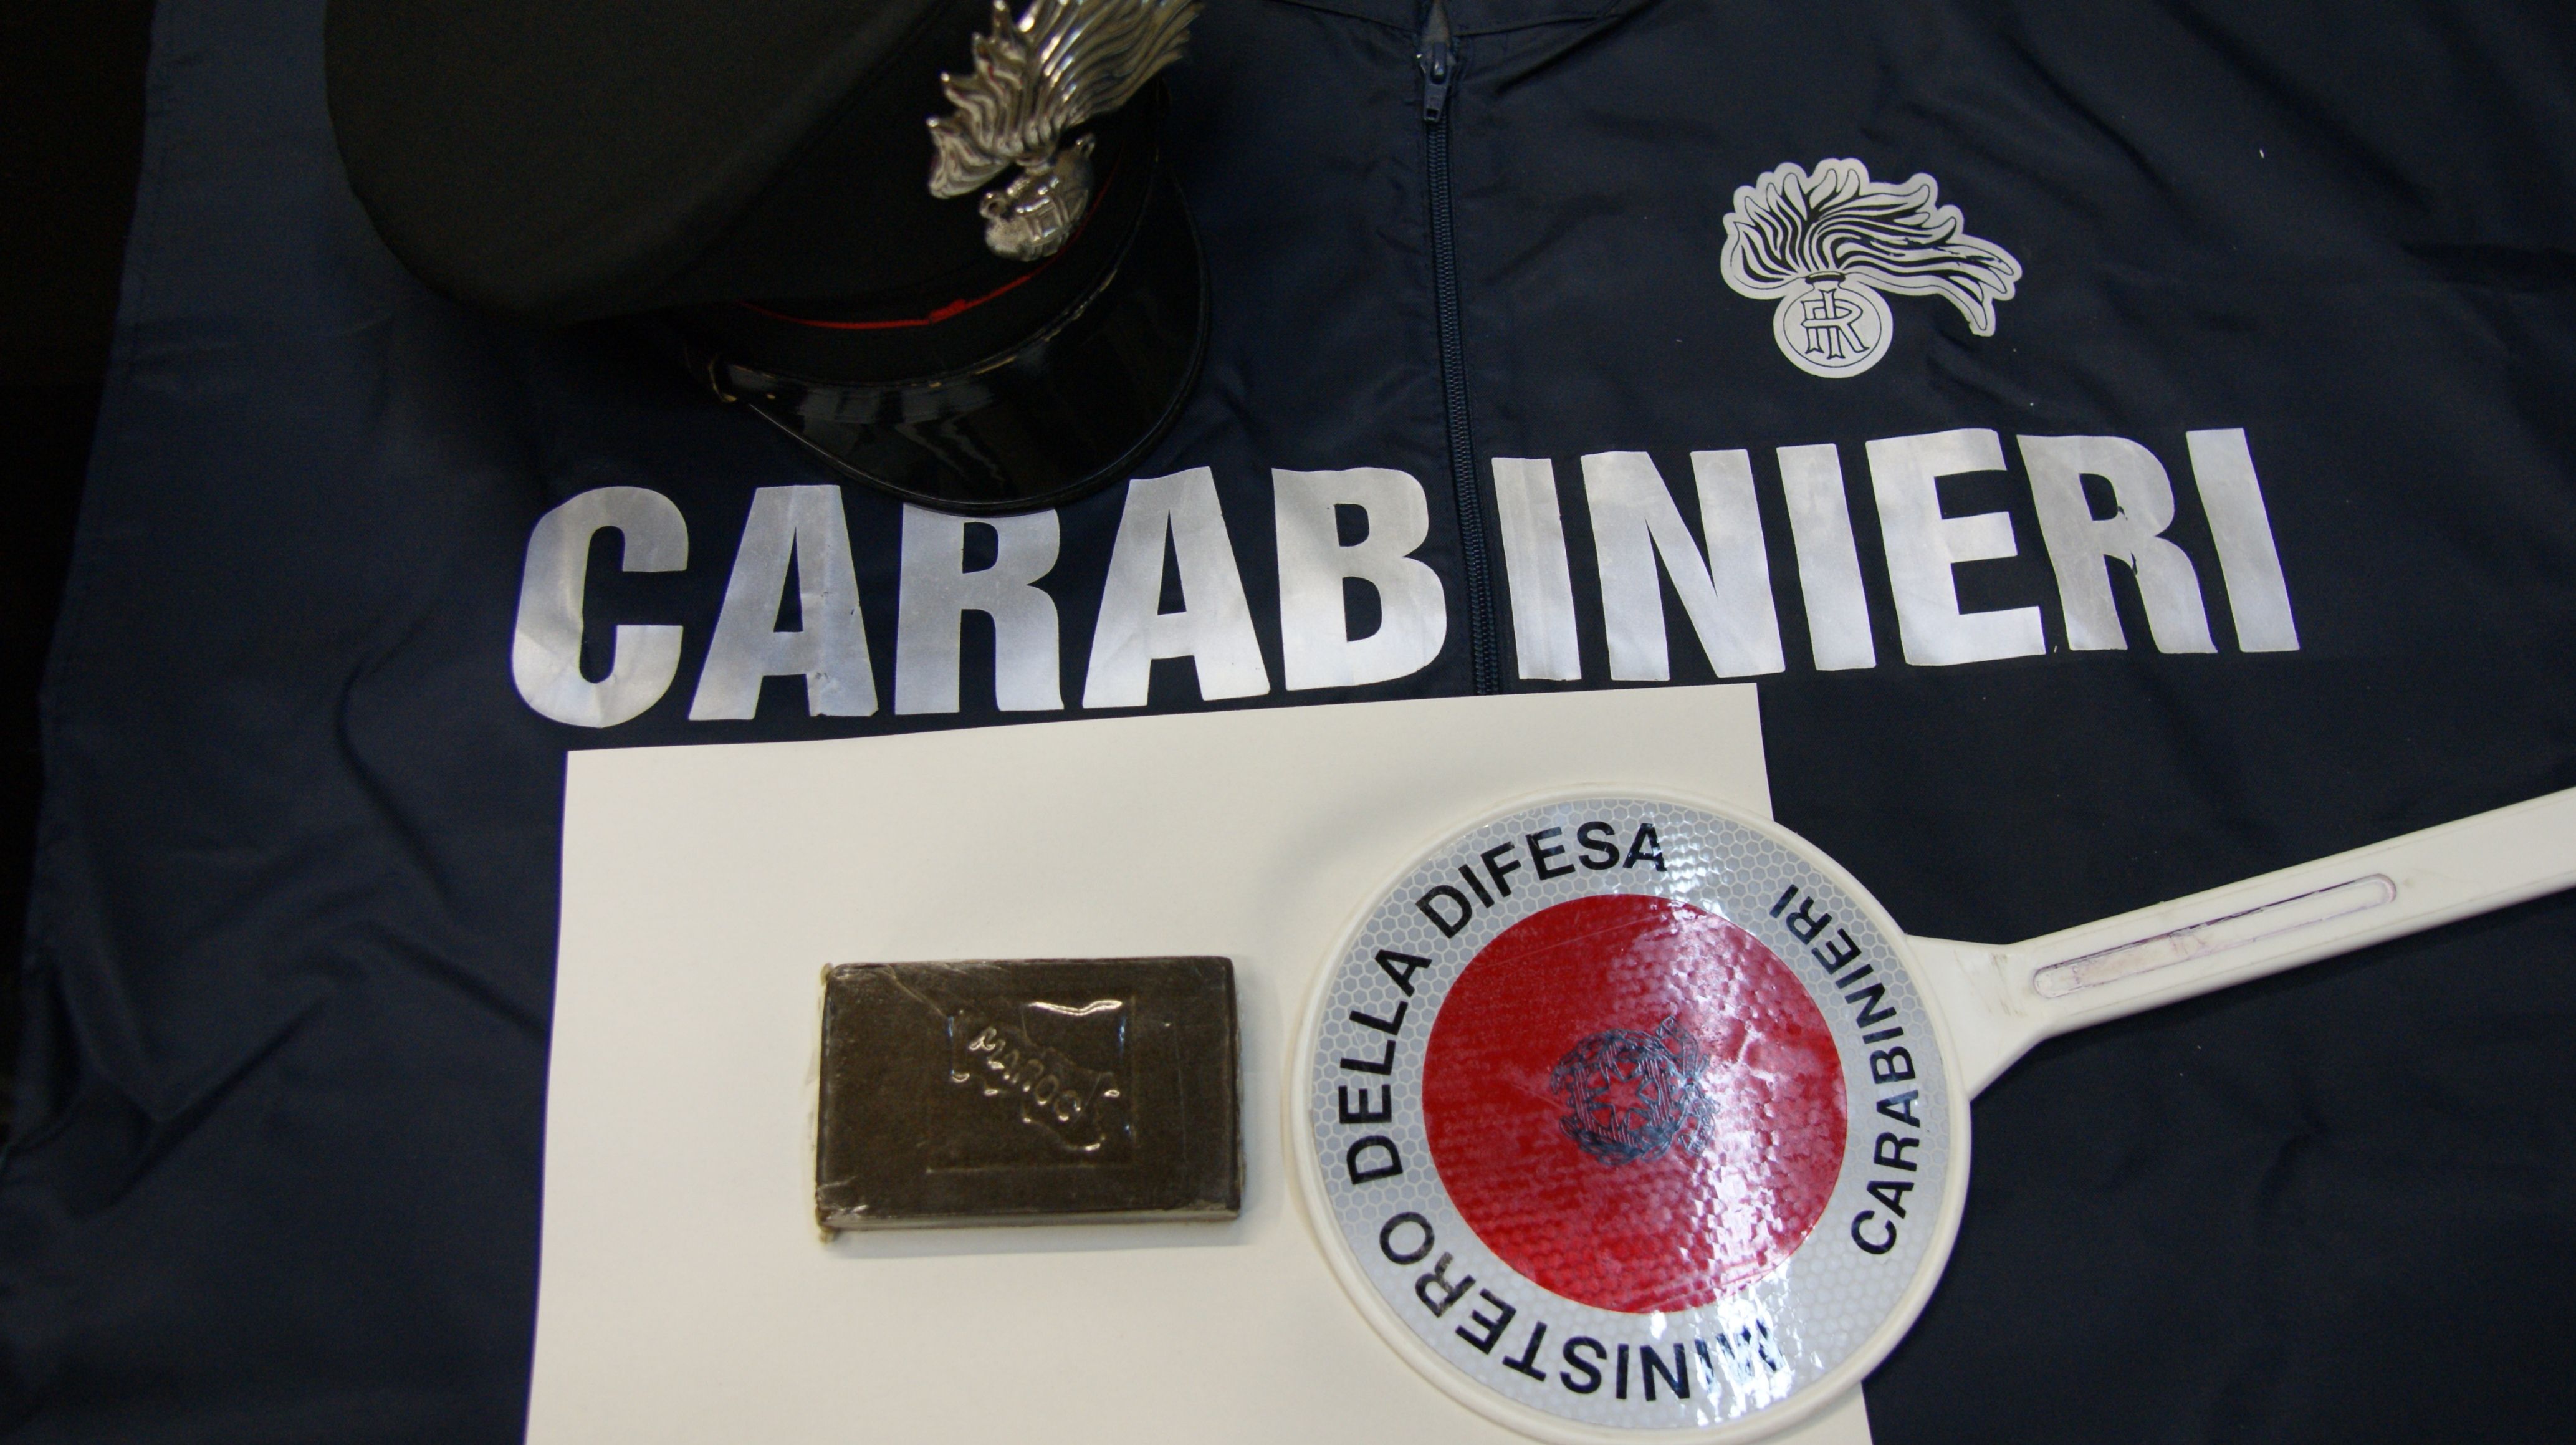  Arrestato un comisano a Santa Croce: aveva 100 gr di hashish in auto